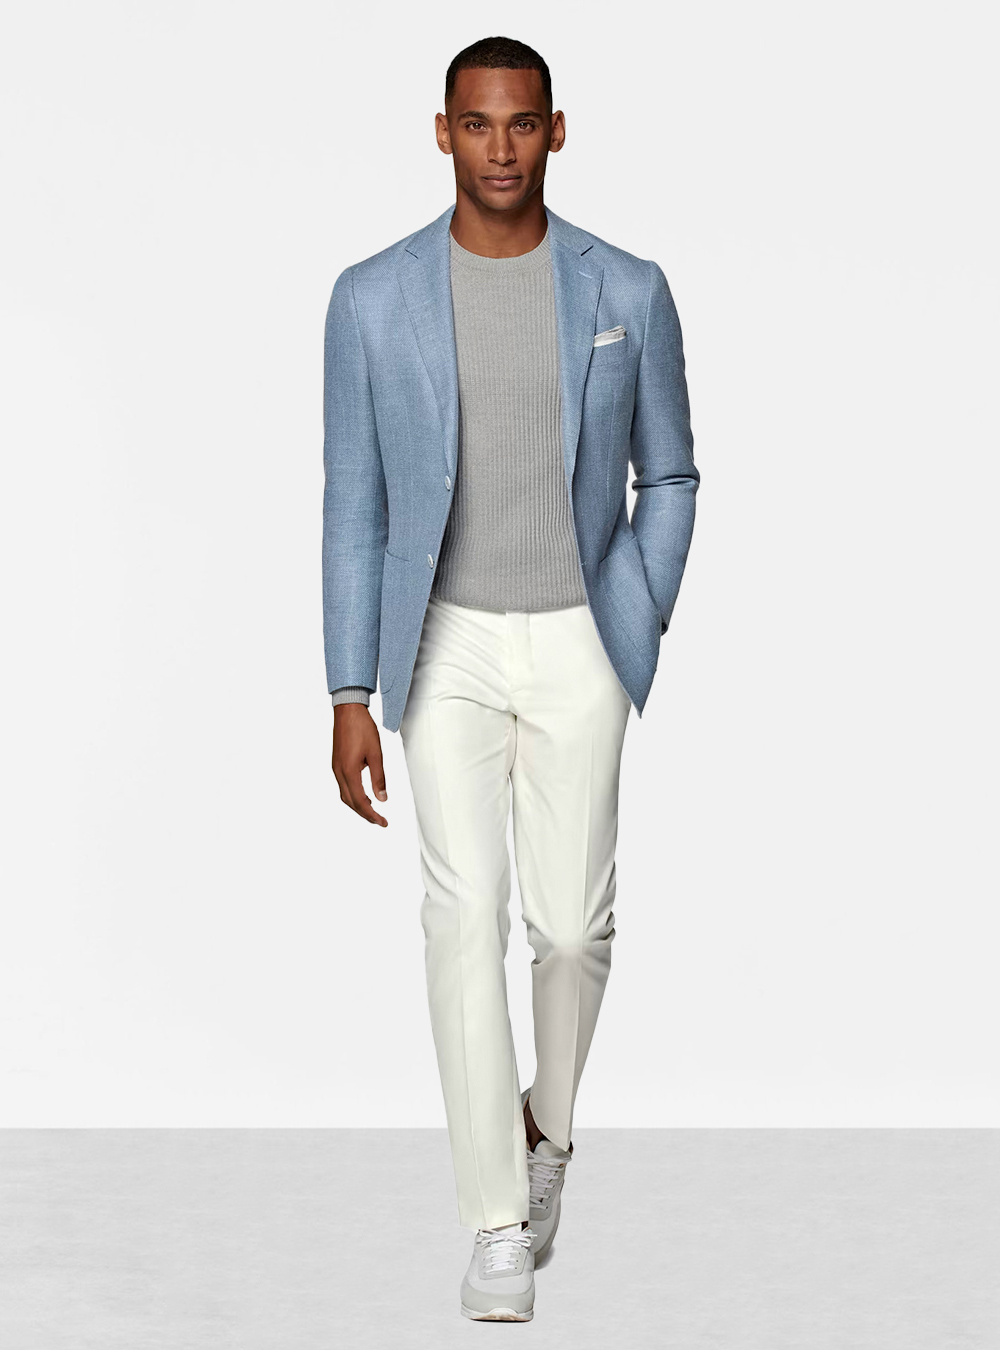 light blue blazer grey t shirt white dress pants grey sneakers